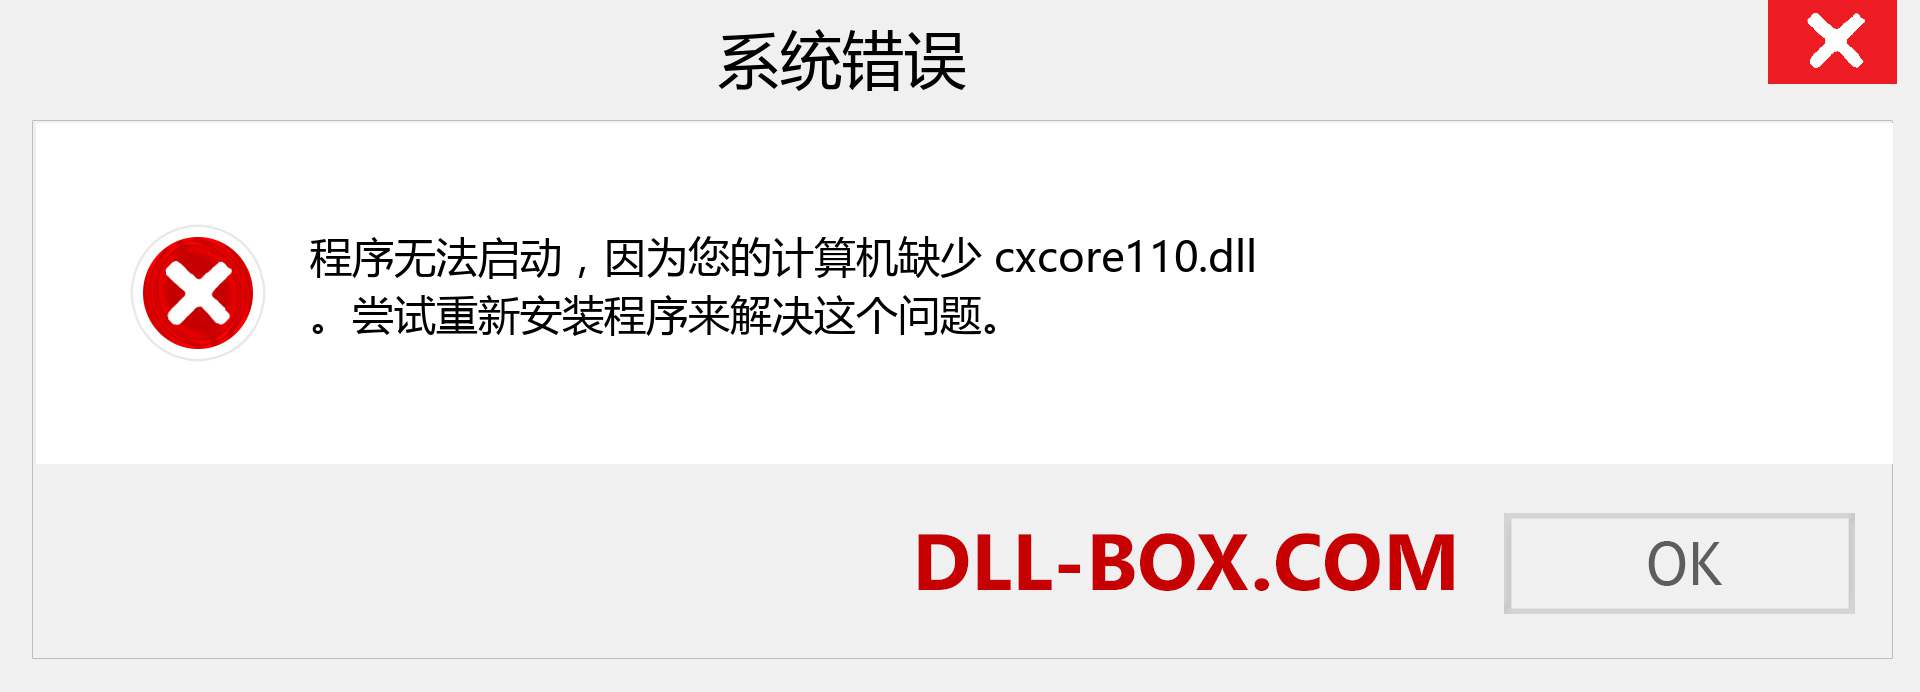 cxcore110.dll 文件丢失？。 适用于 Windows 7、8、10 的下载 - 修复 Windows、照片、图像上的 cxcore110 dll 丢失错误